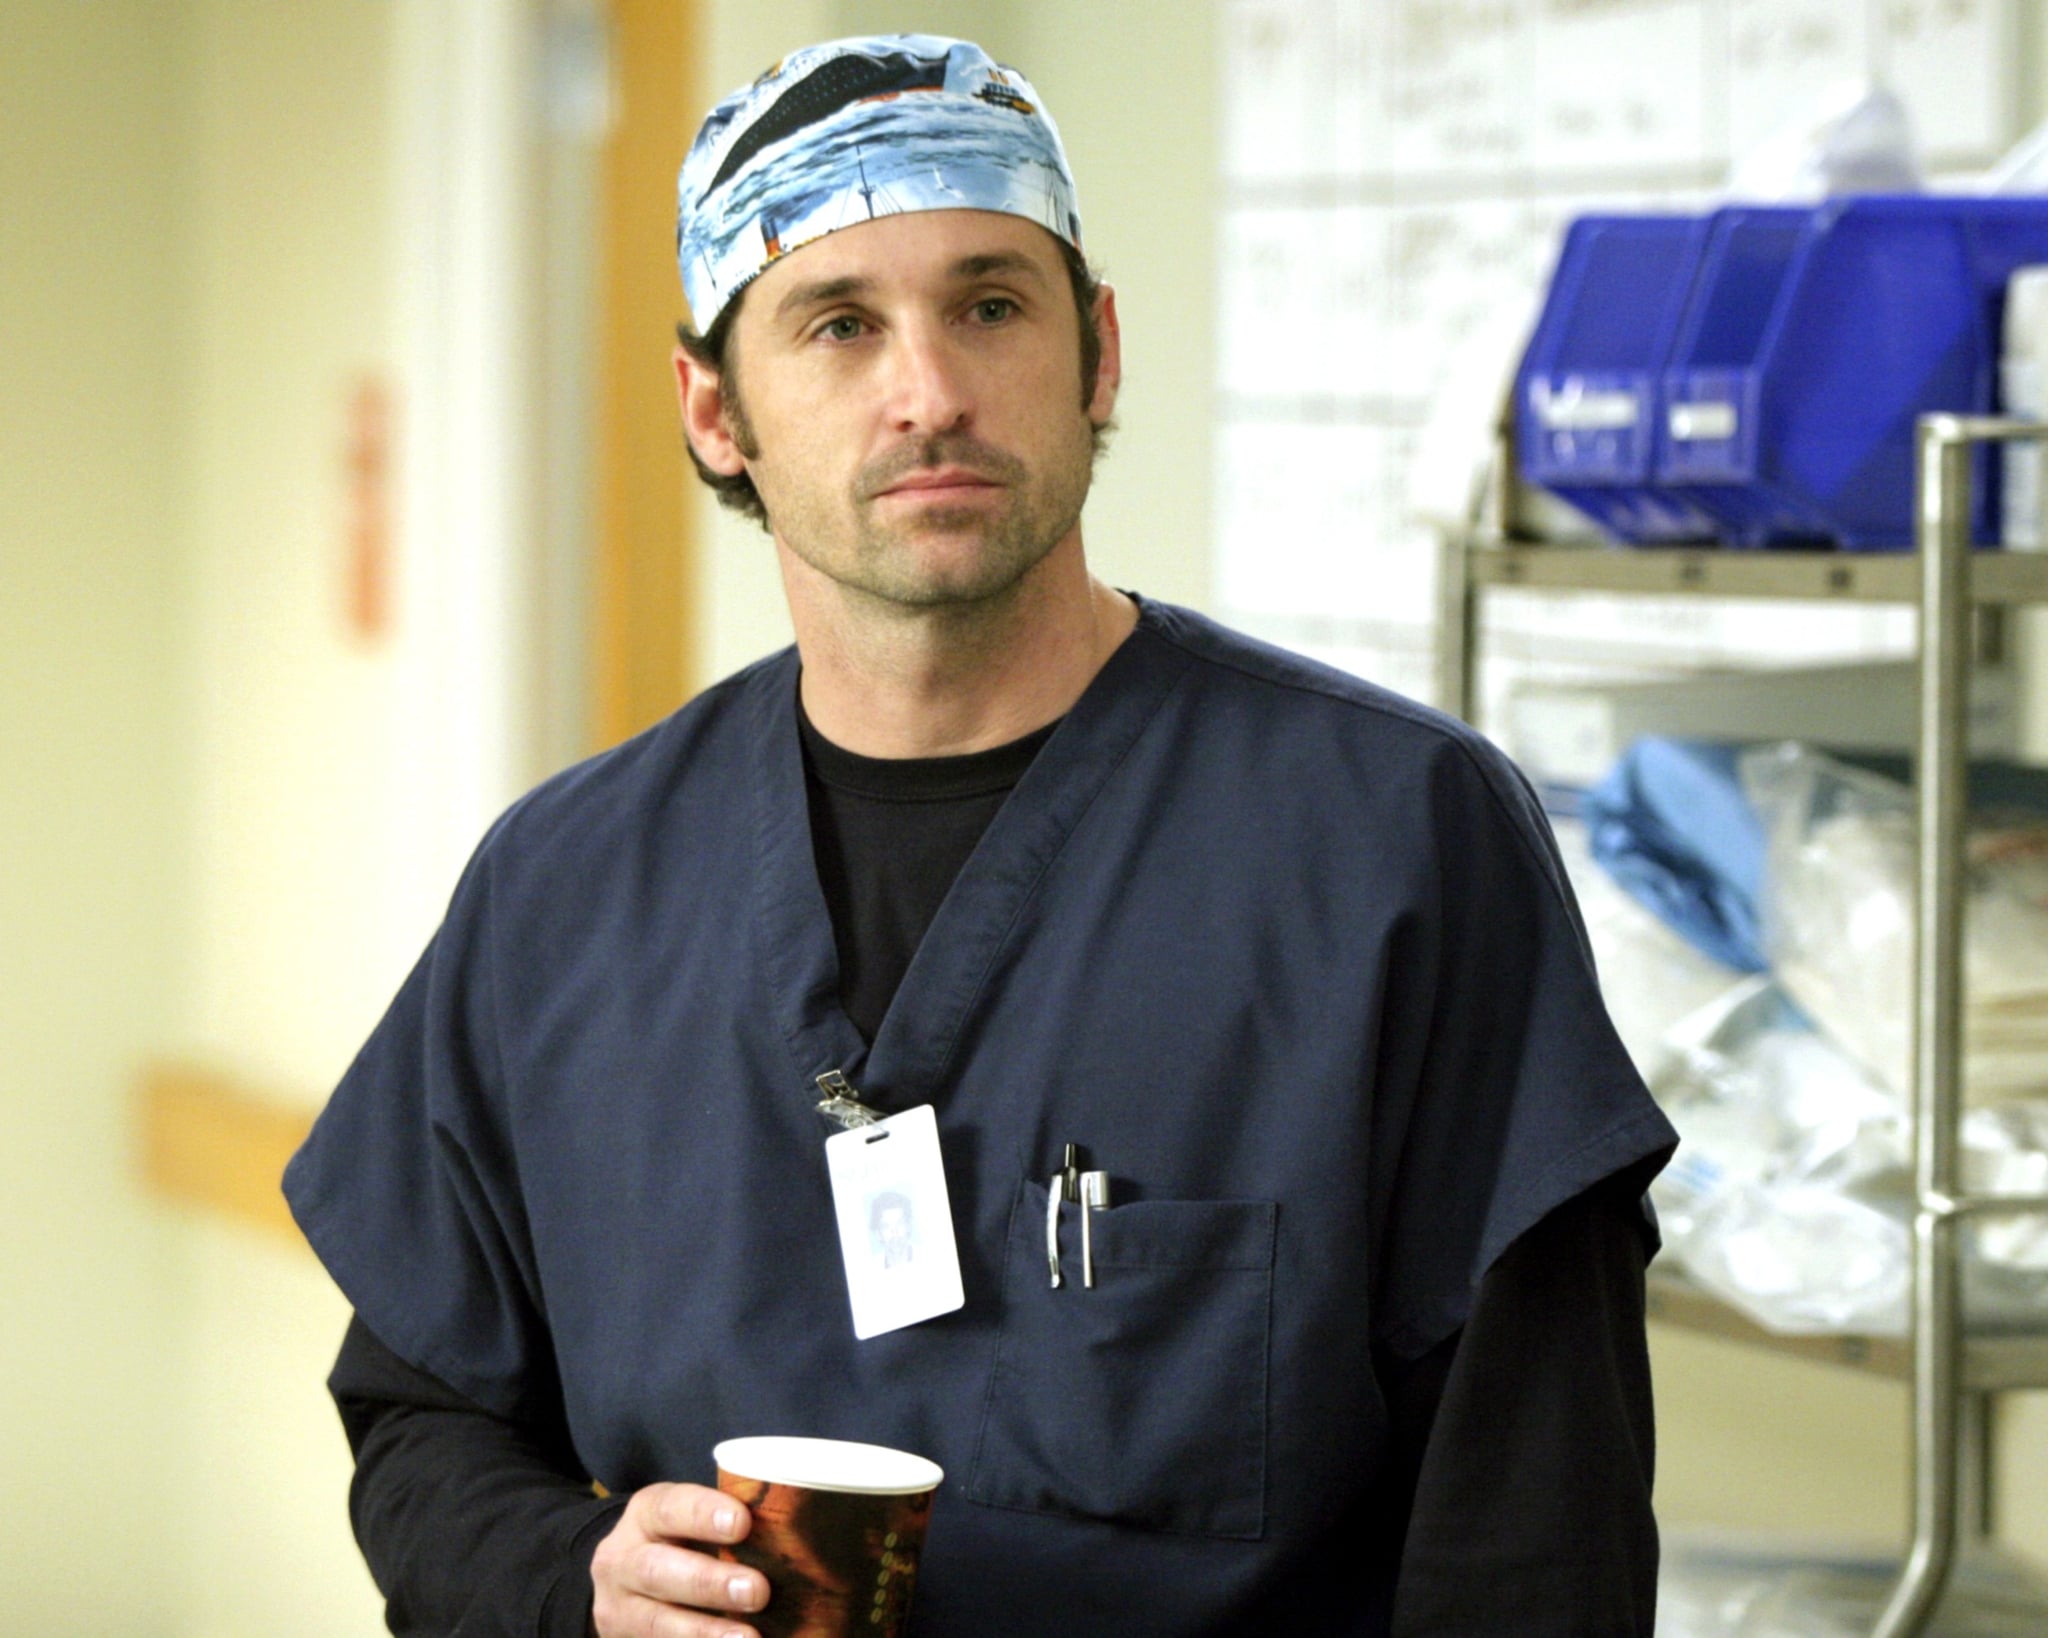 Details About Derek Shepherd's Death on Grey's Anatomy | POPSUGAR Entertainment